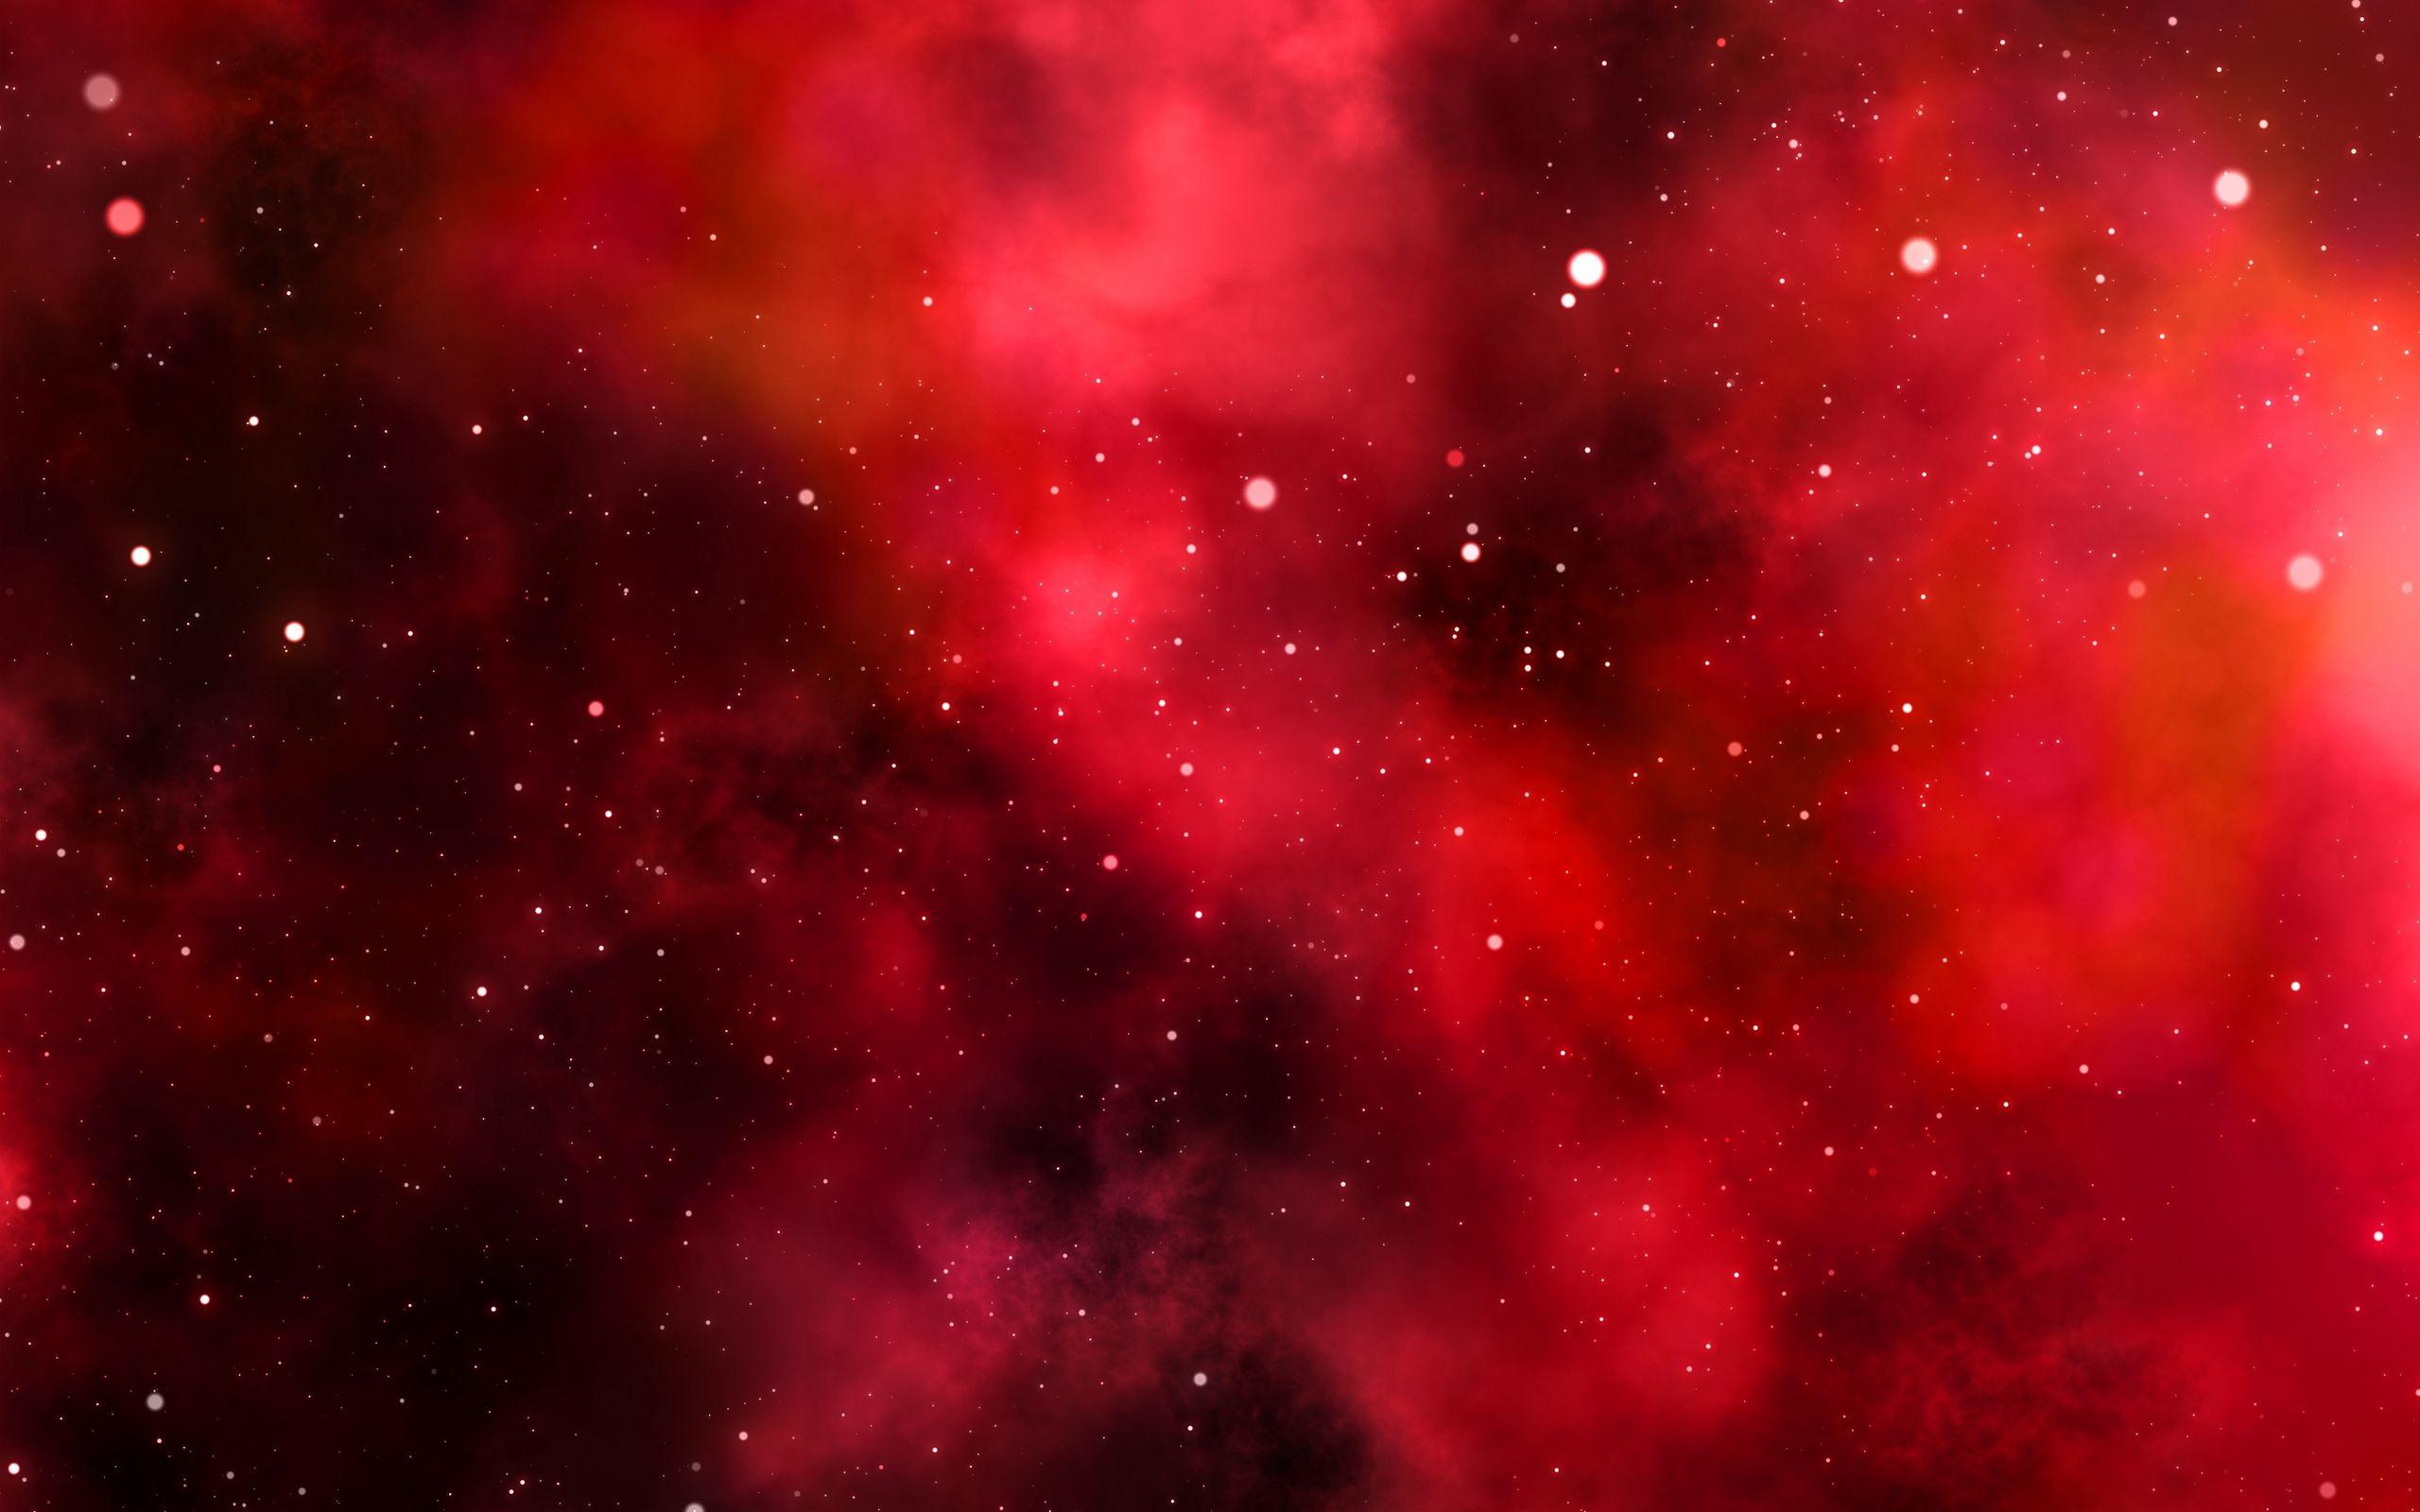 Galaxy wallpaper red đẹp và sáng tạo nhất